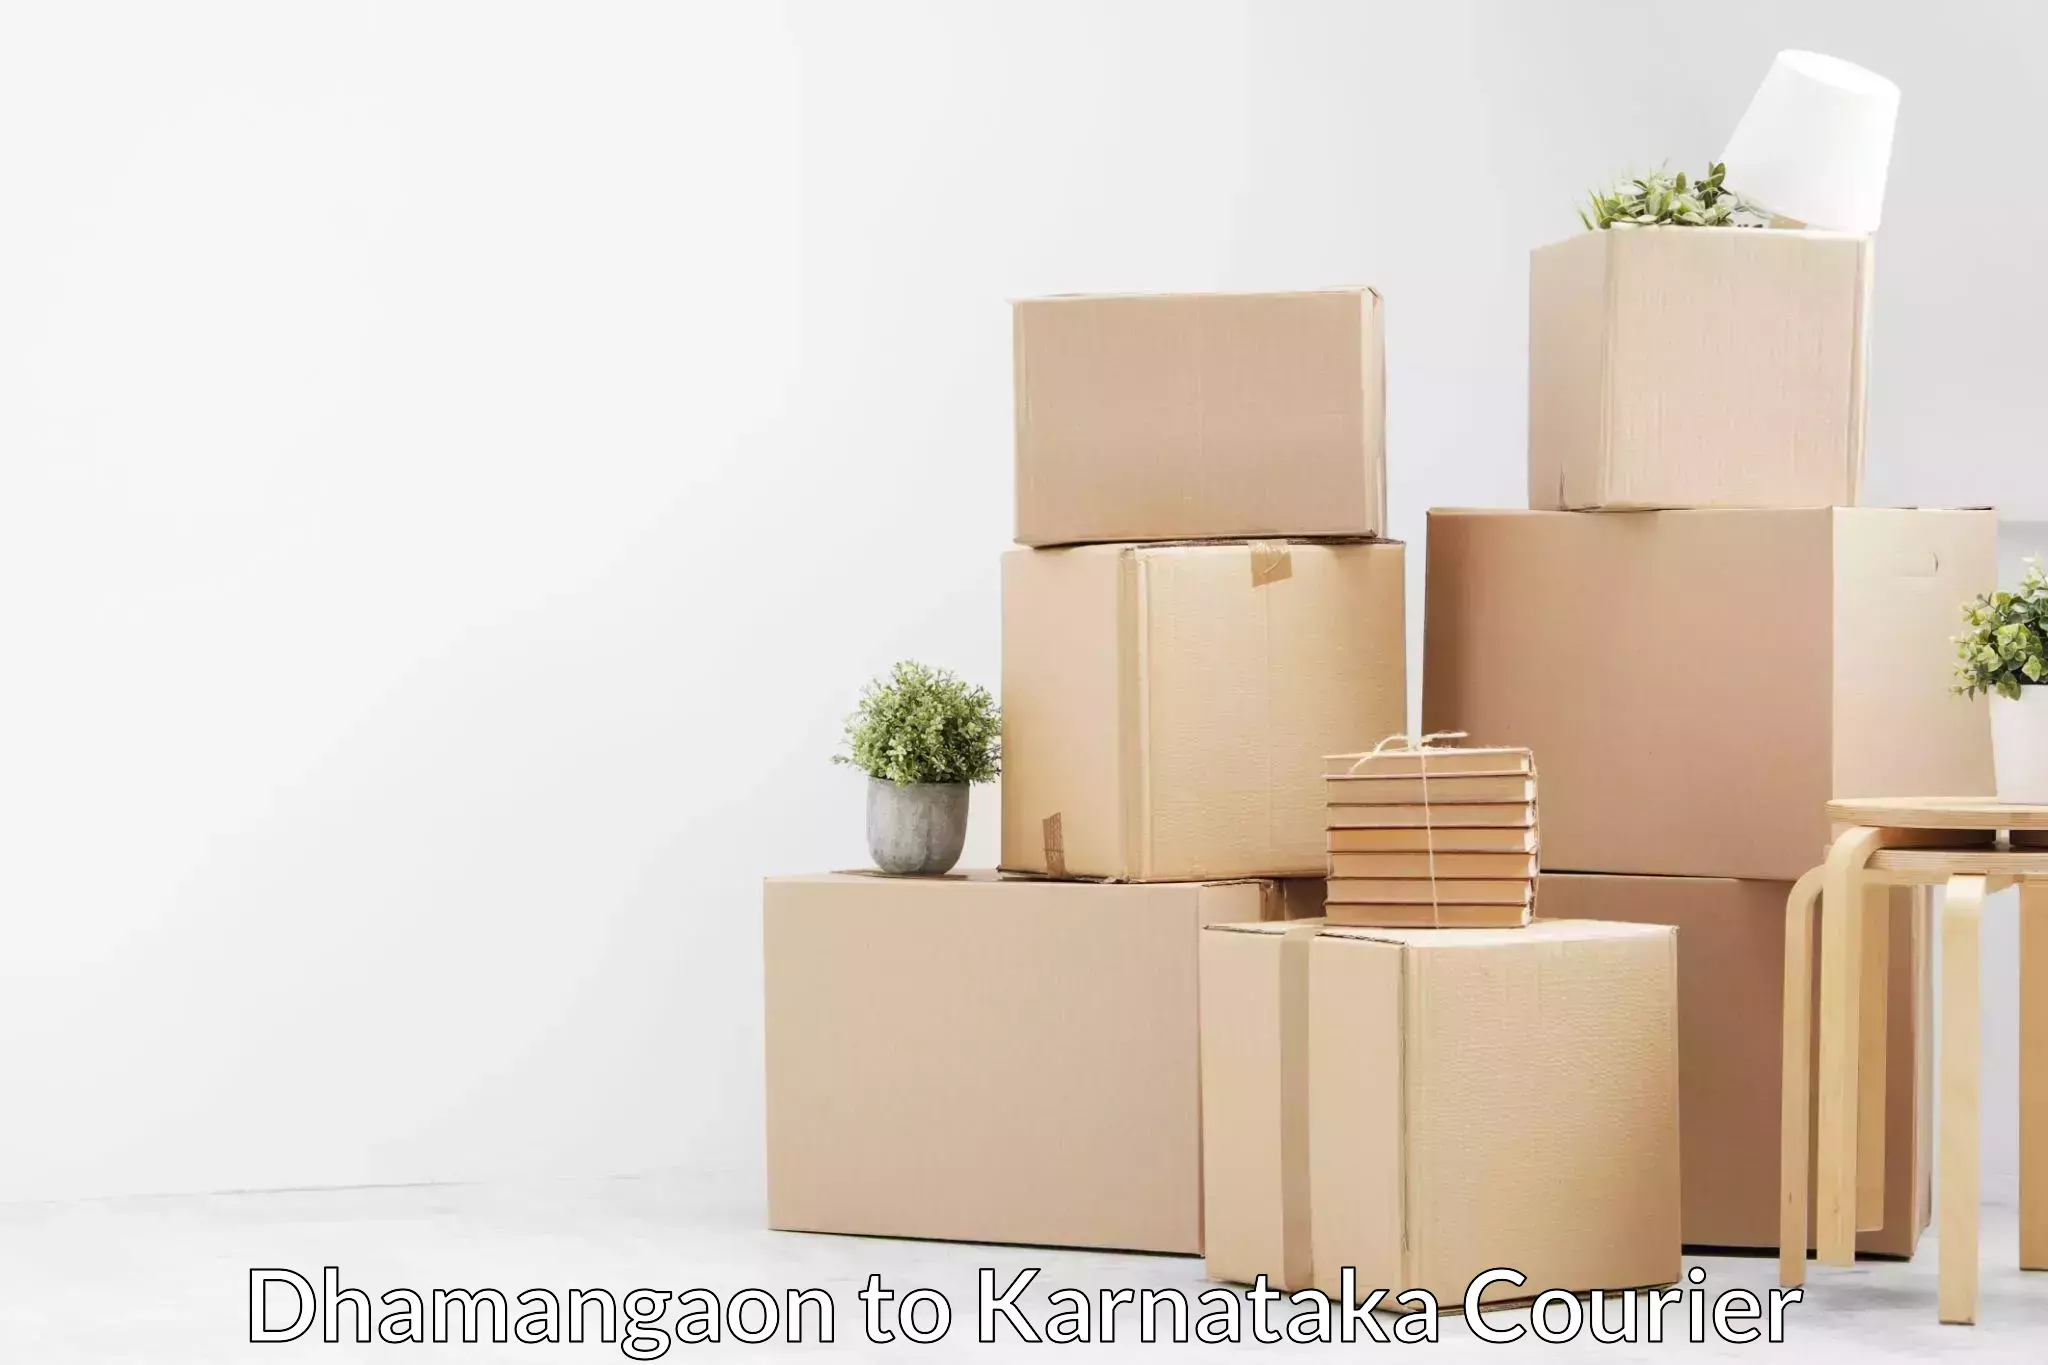 Moving and packing experts Dhamangaon to Mannaekhelli